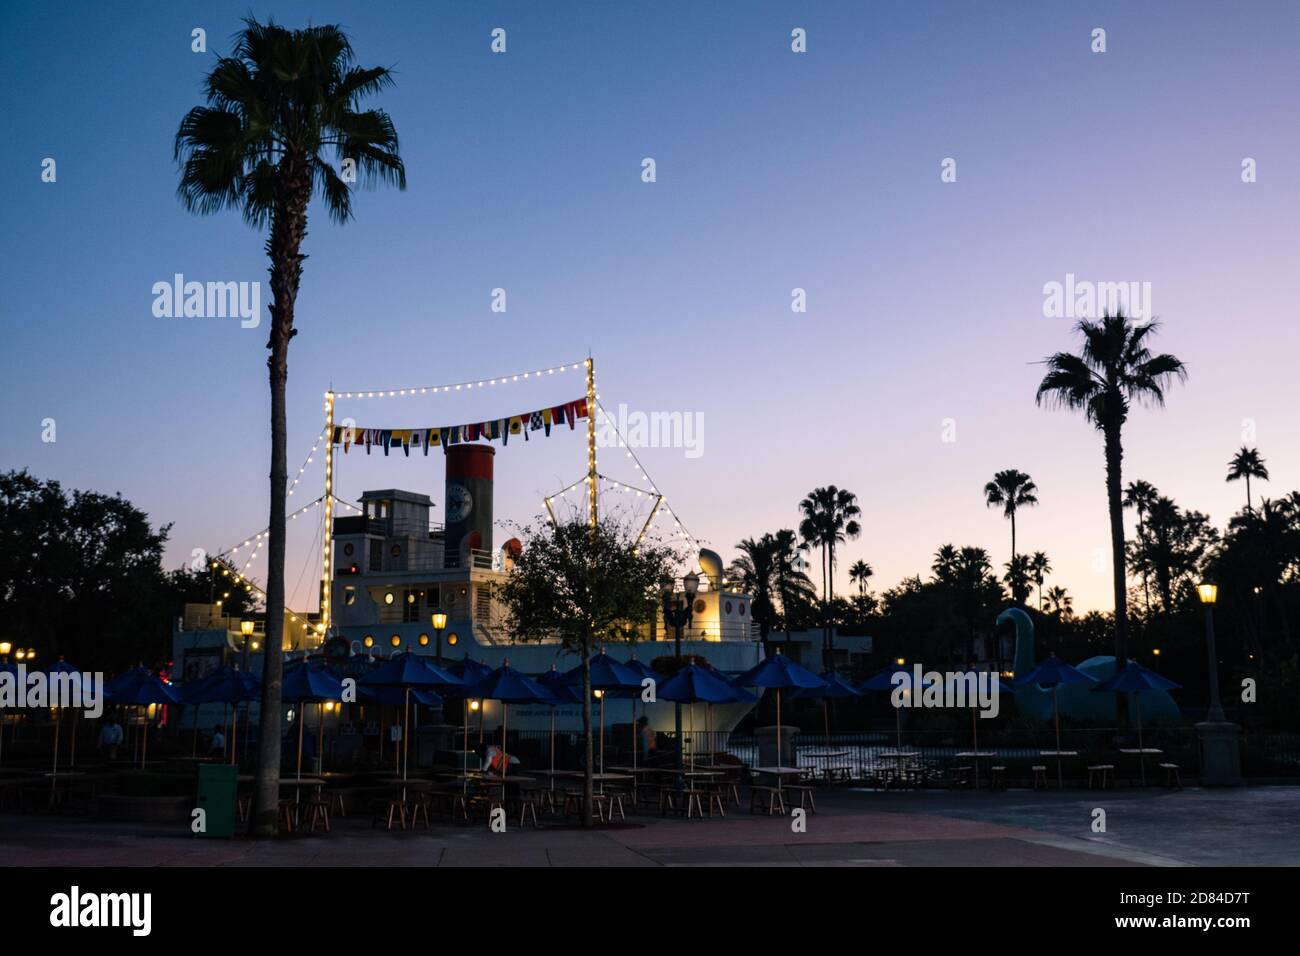 The Dockside Diner at Echo Lake, Disney's Hollywood Studios, Florida bereitet sich bei Sonnenaufgang auf die ersten Touristen vor Stockfoto